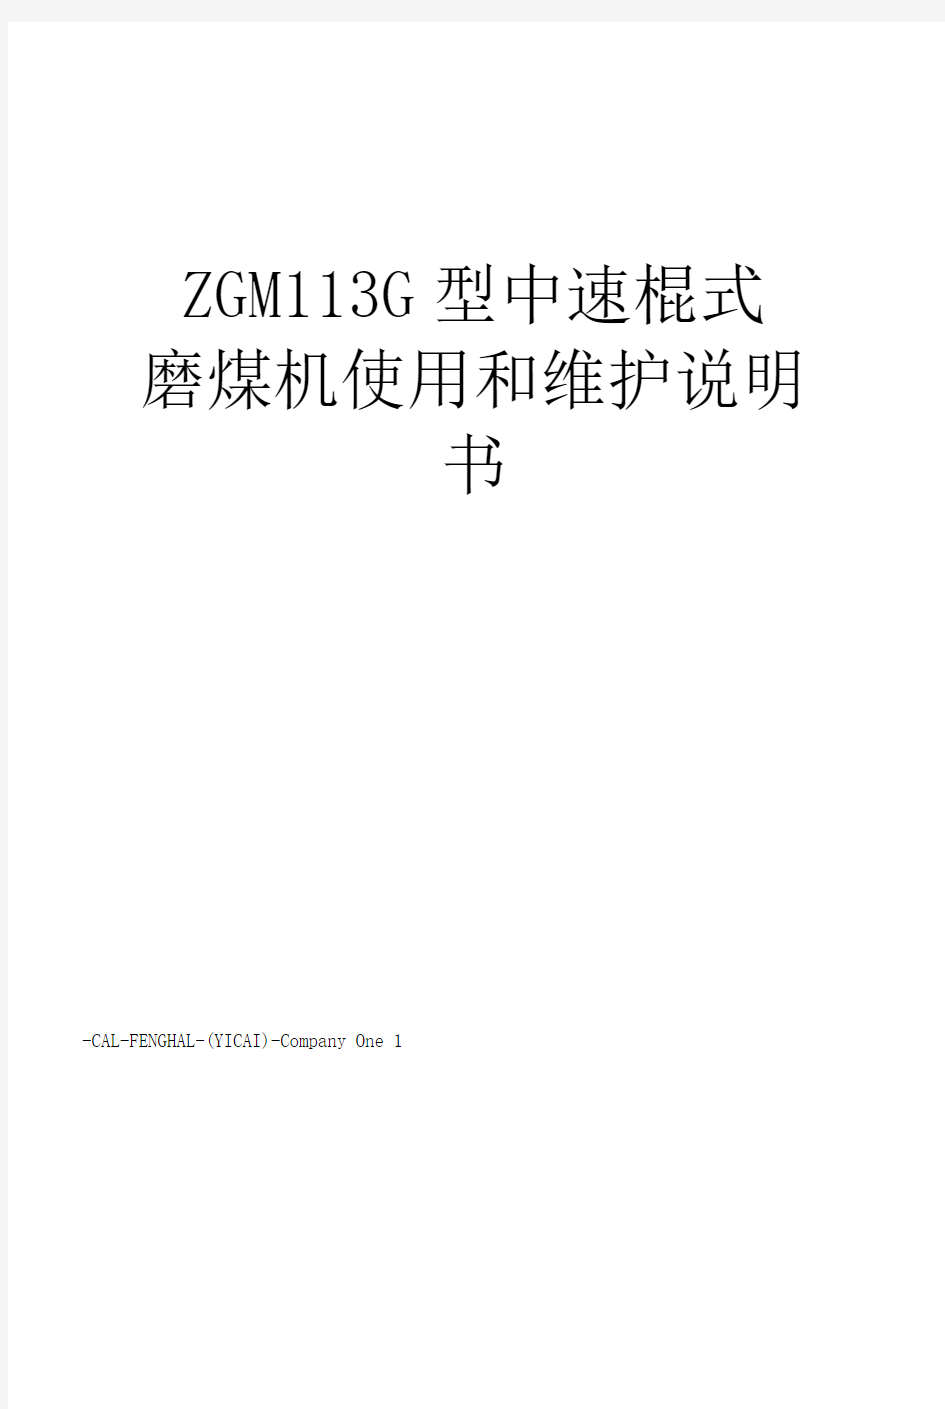 ZGM113G型中速辊式磨煤机使用和维护说明书